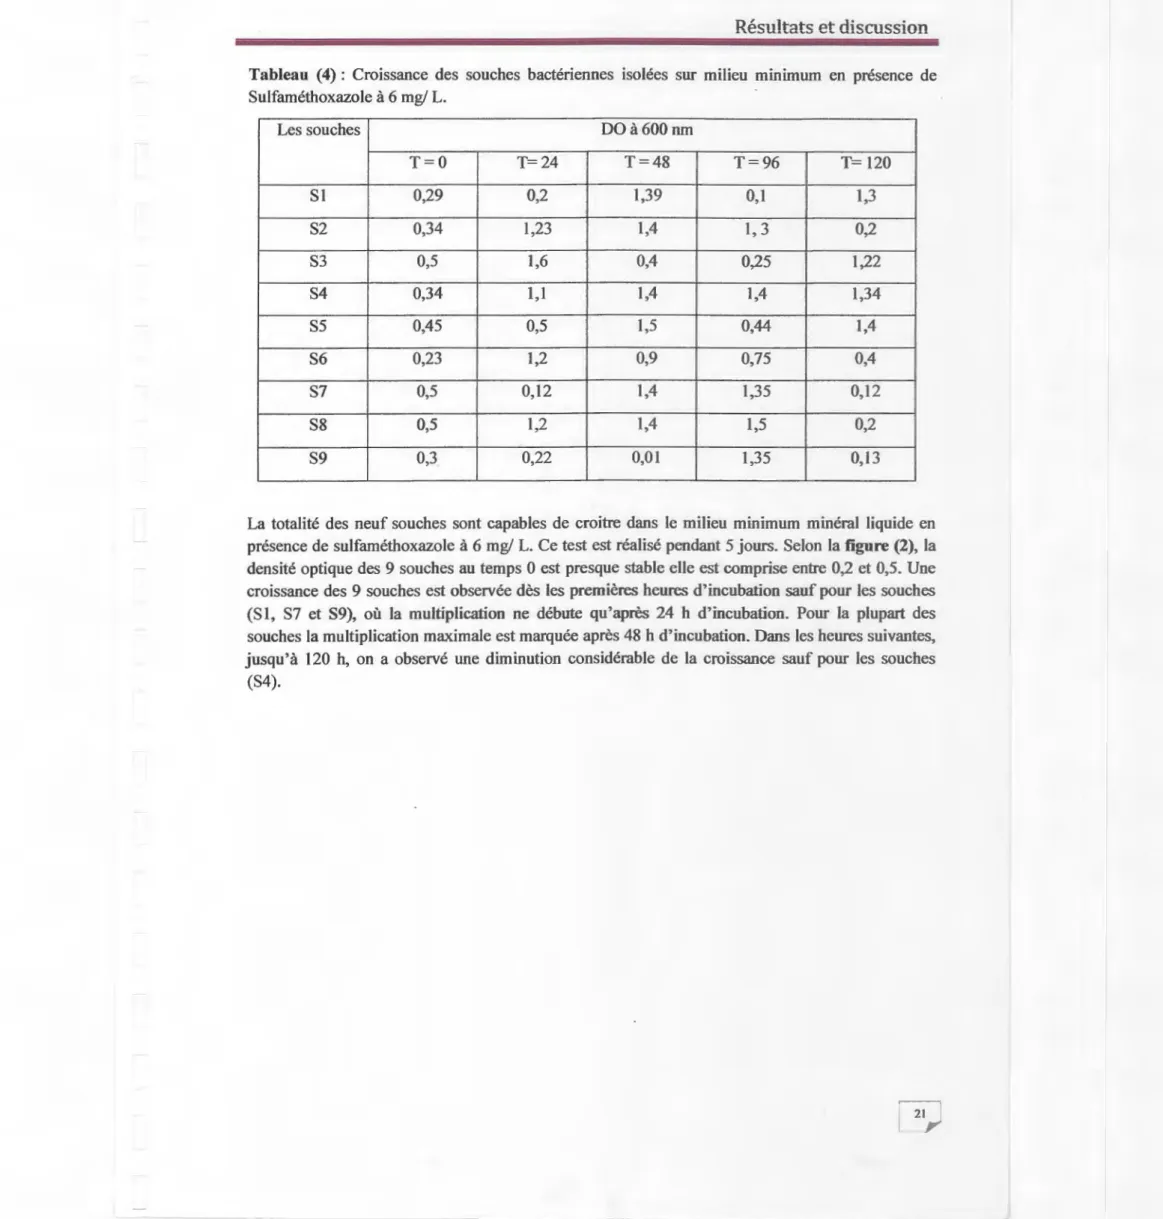 Tableau  (4):  Croissance  des  souches  bactériennes  isolées  sur  milieu  minimum  en  présence  de  Sulfaméthoxazole à 6 mg/ L